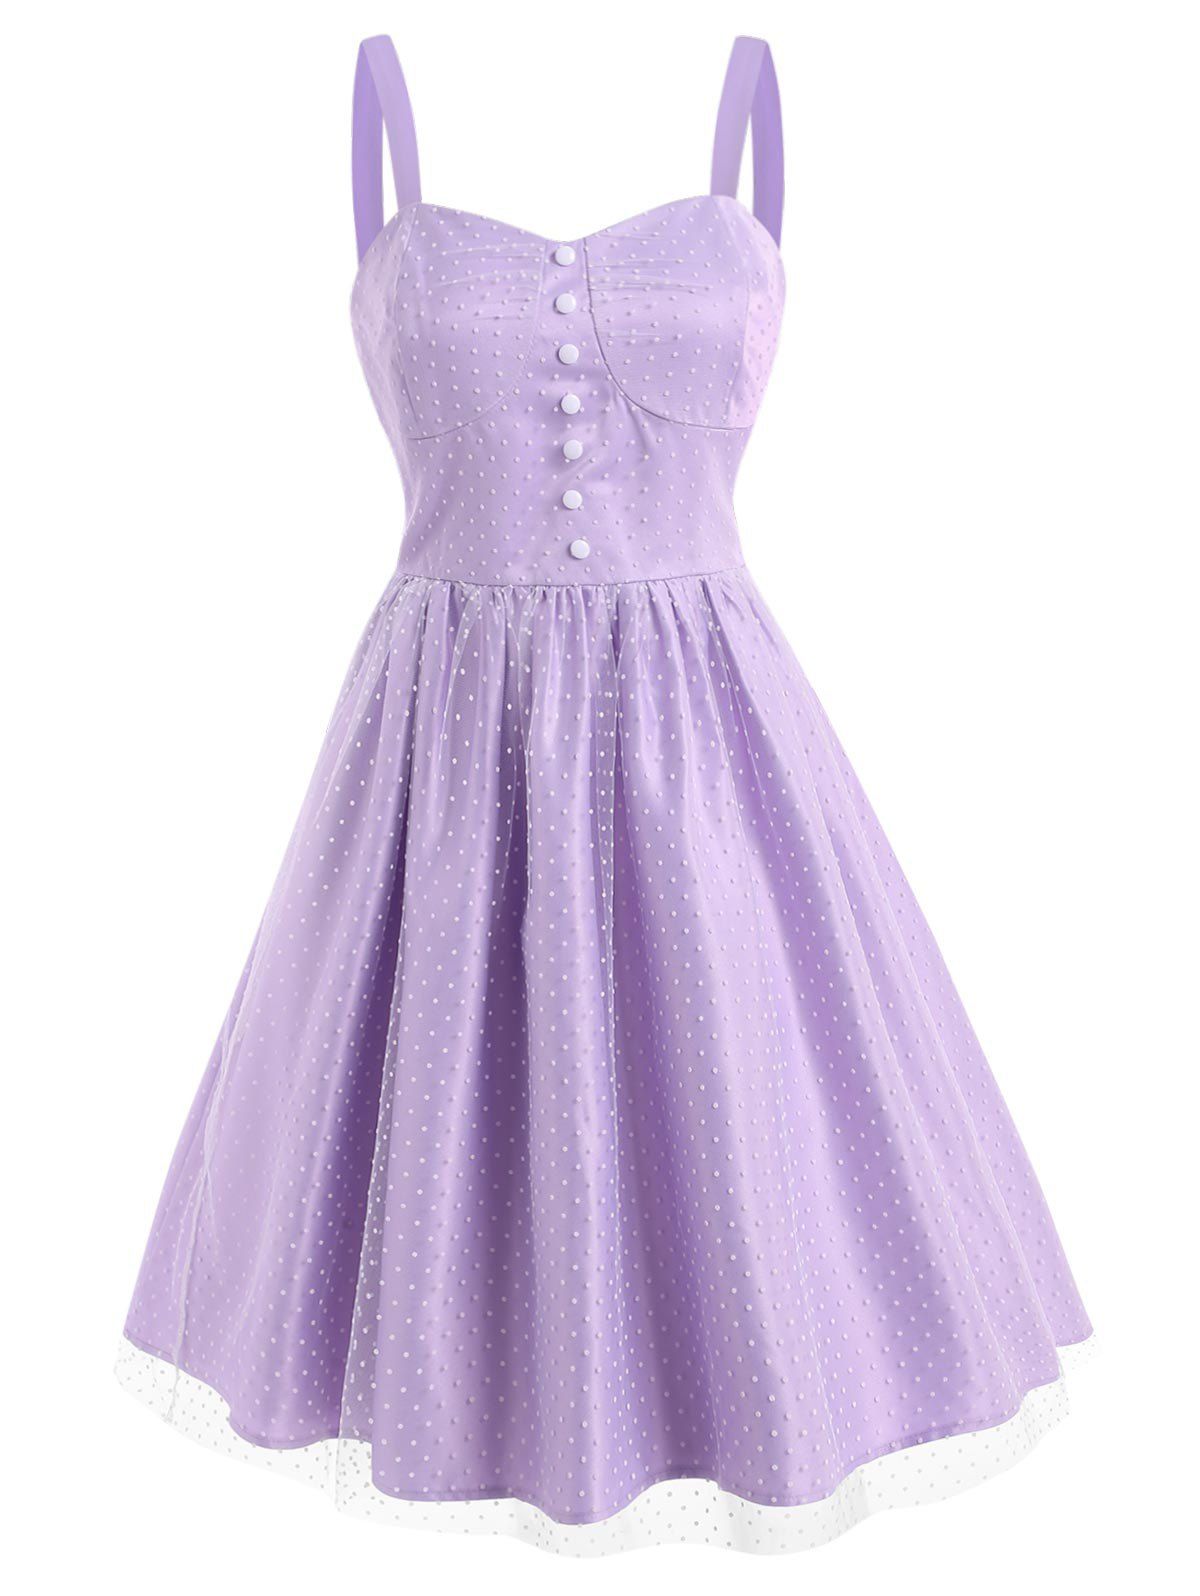 Robe Vintage Evasée Superposée en Maille à Pois Style Corset - Violet clair S